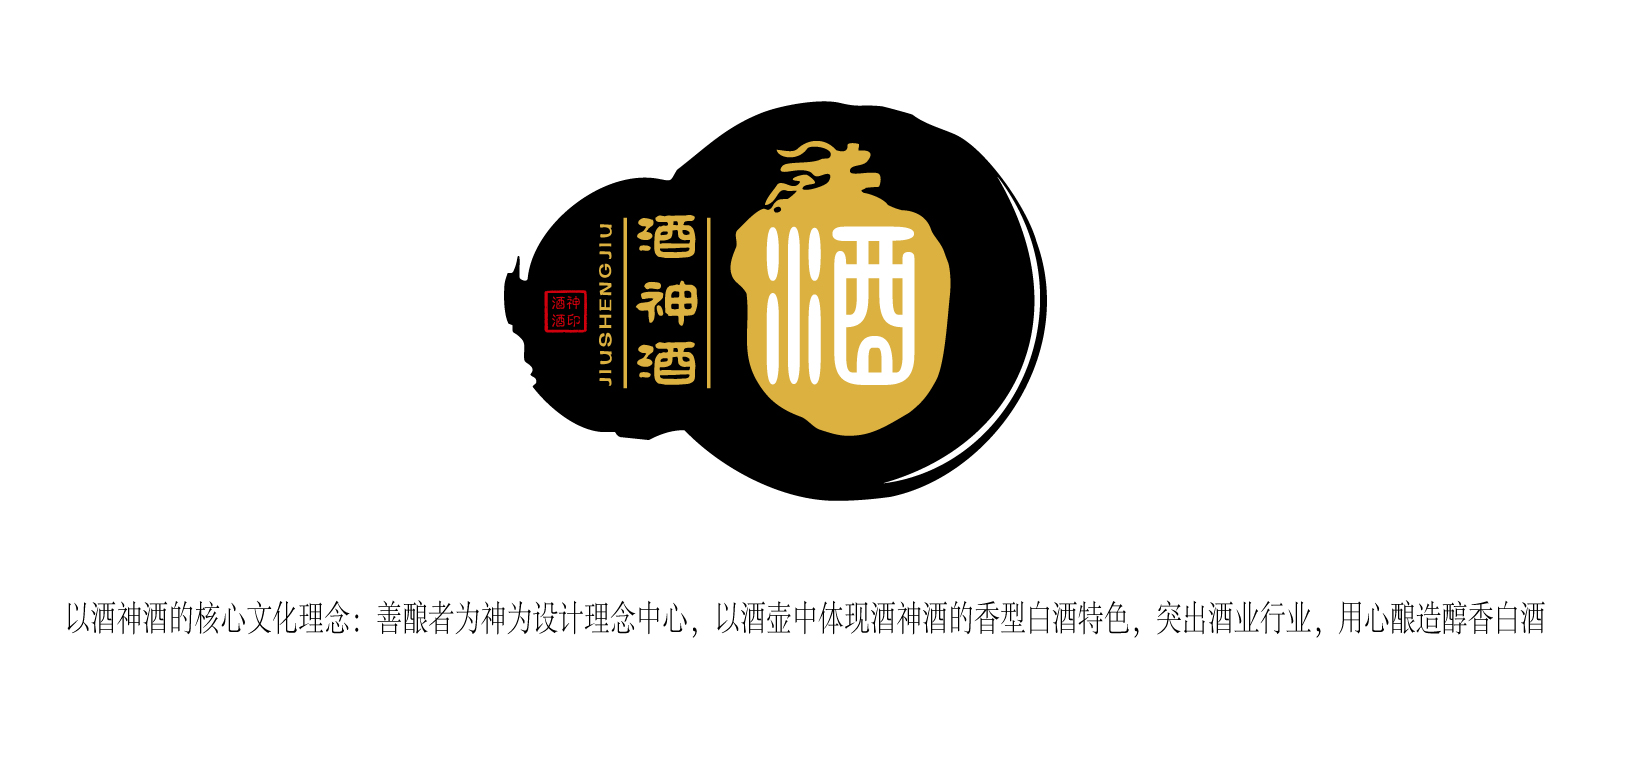 酒logo设计及设计说明图片